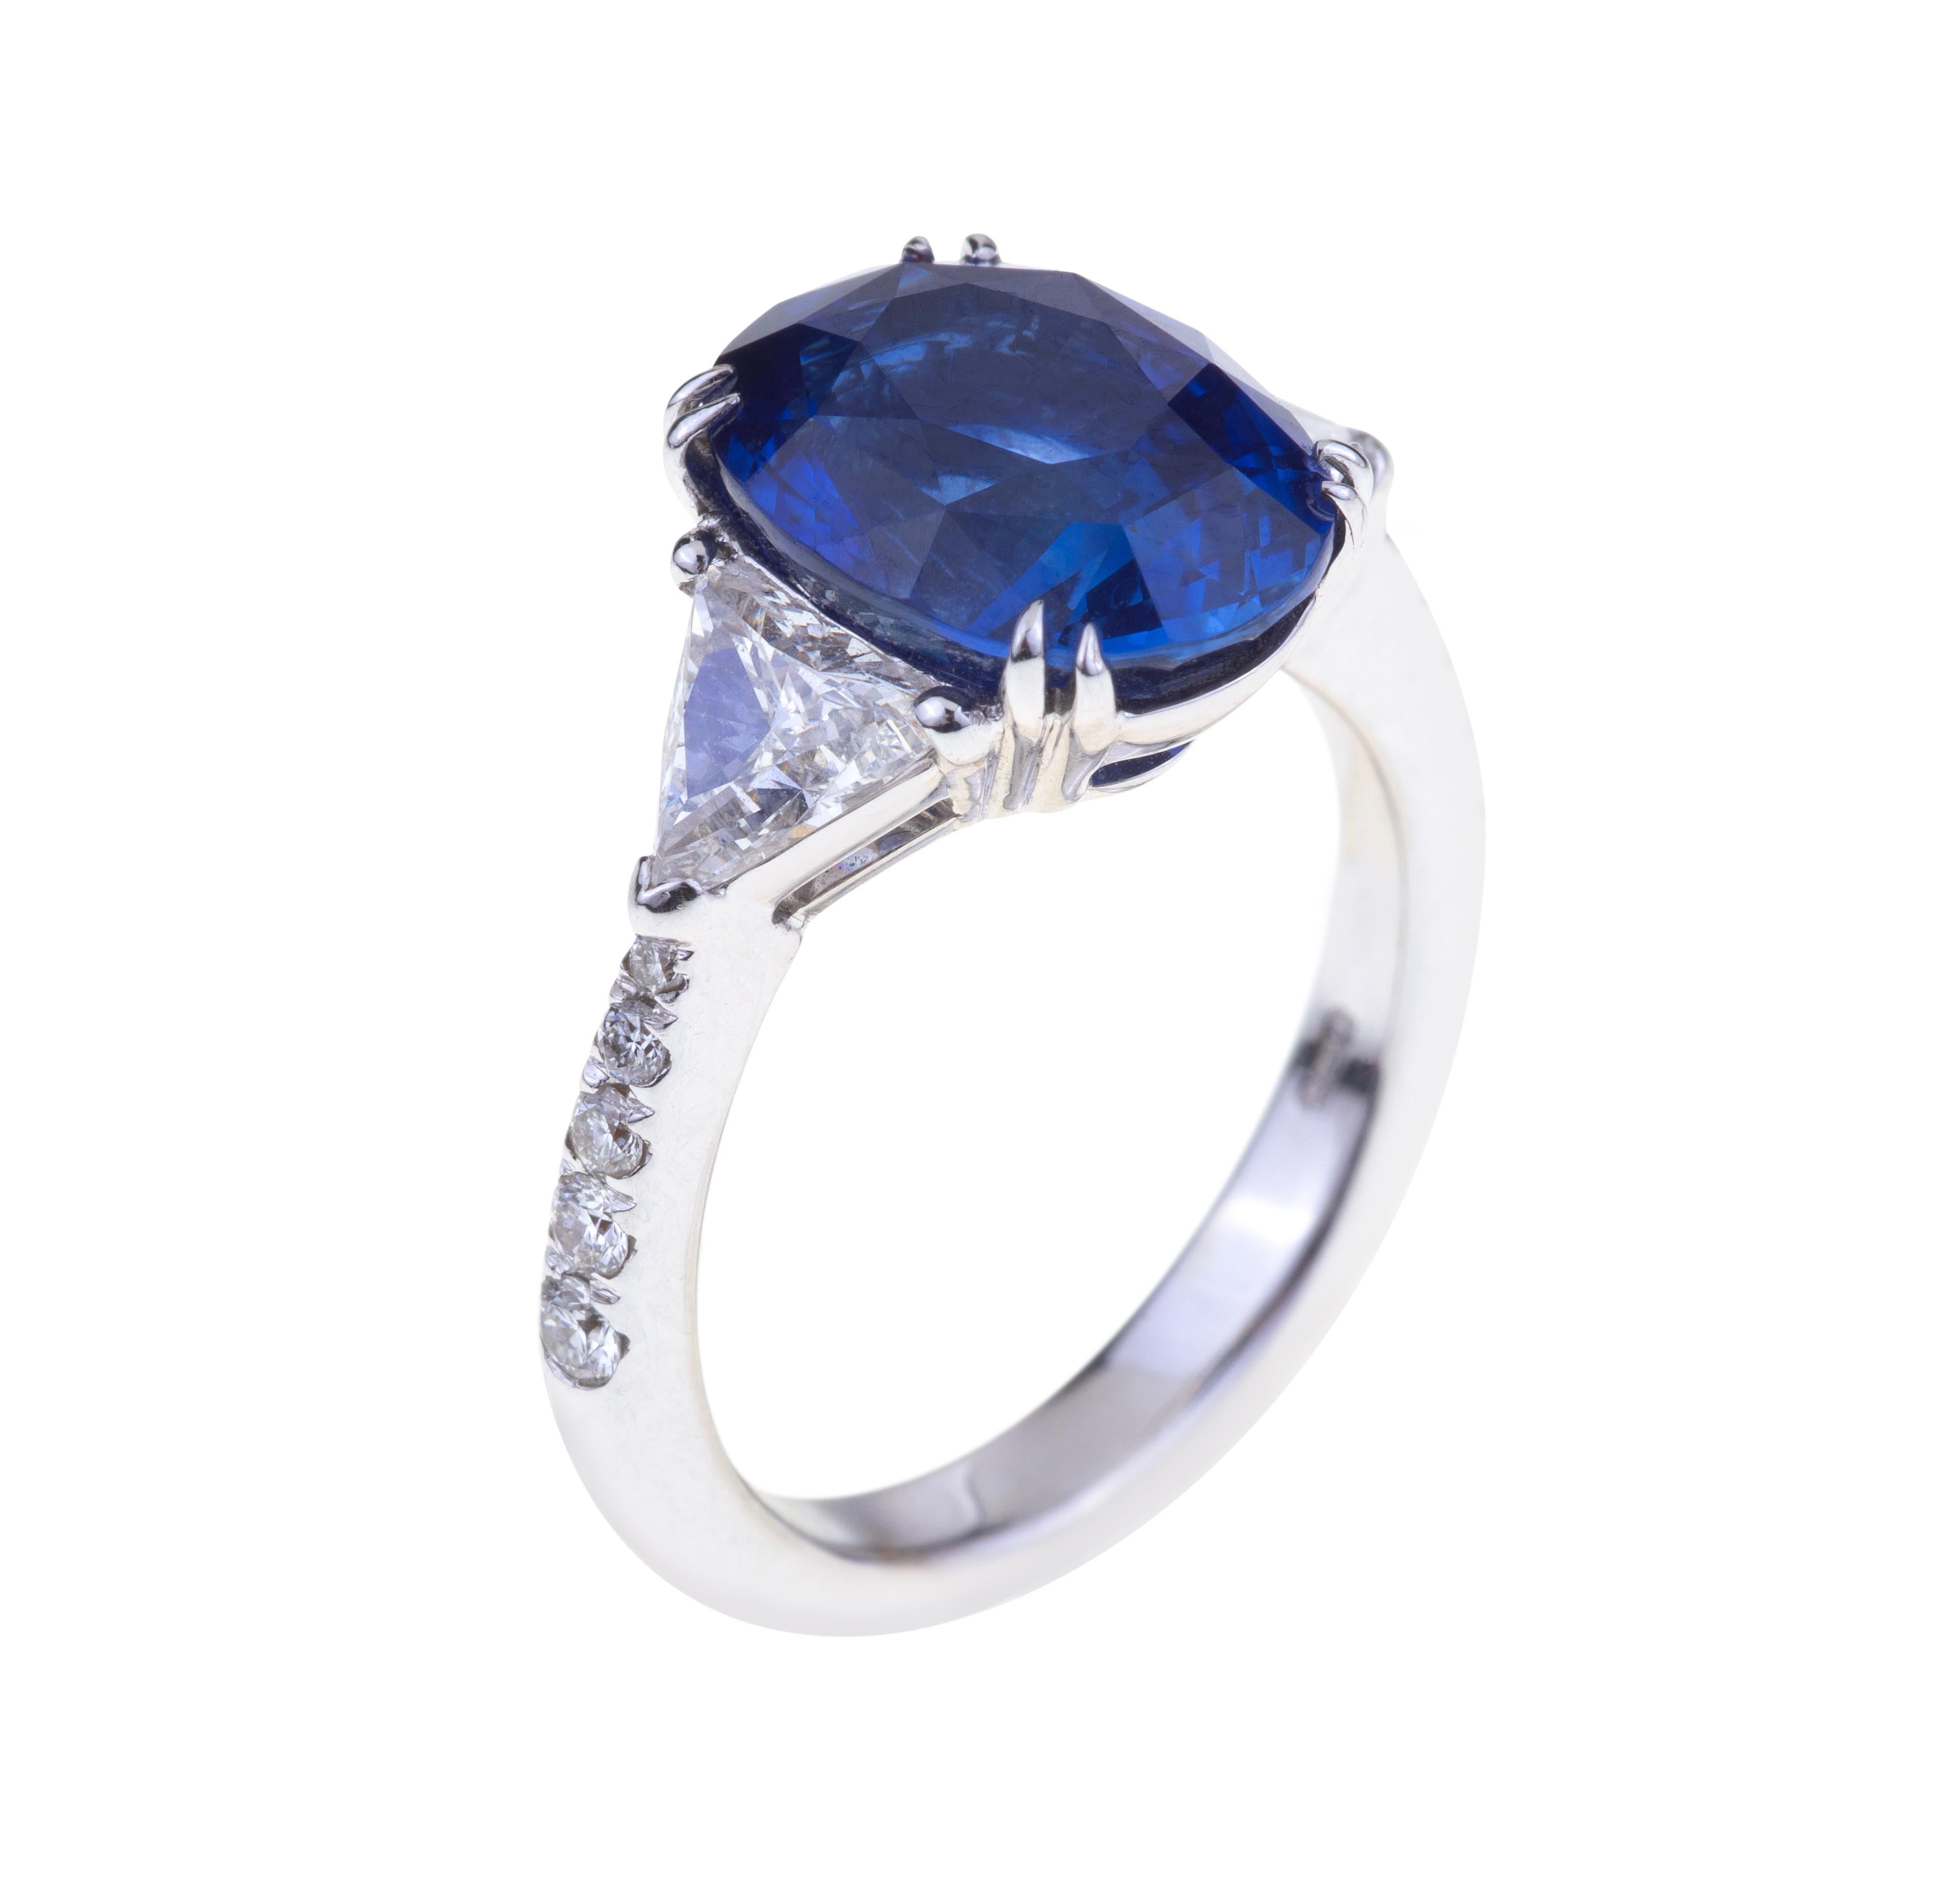 Superbe bague ovale en saphirs bleus ct. 5.90 Certificat avec diamants.
Design/One classique avec un saphir bleu (ct. 5.90 ) et des diamants sur le côté (ct. 1.18 Round G-SI). Le poids de l'or 18kt est de 6,10. Certificat 2016-0011322
Conçu en